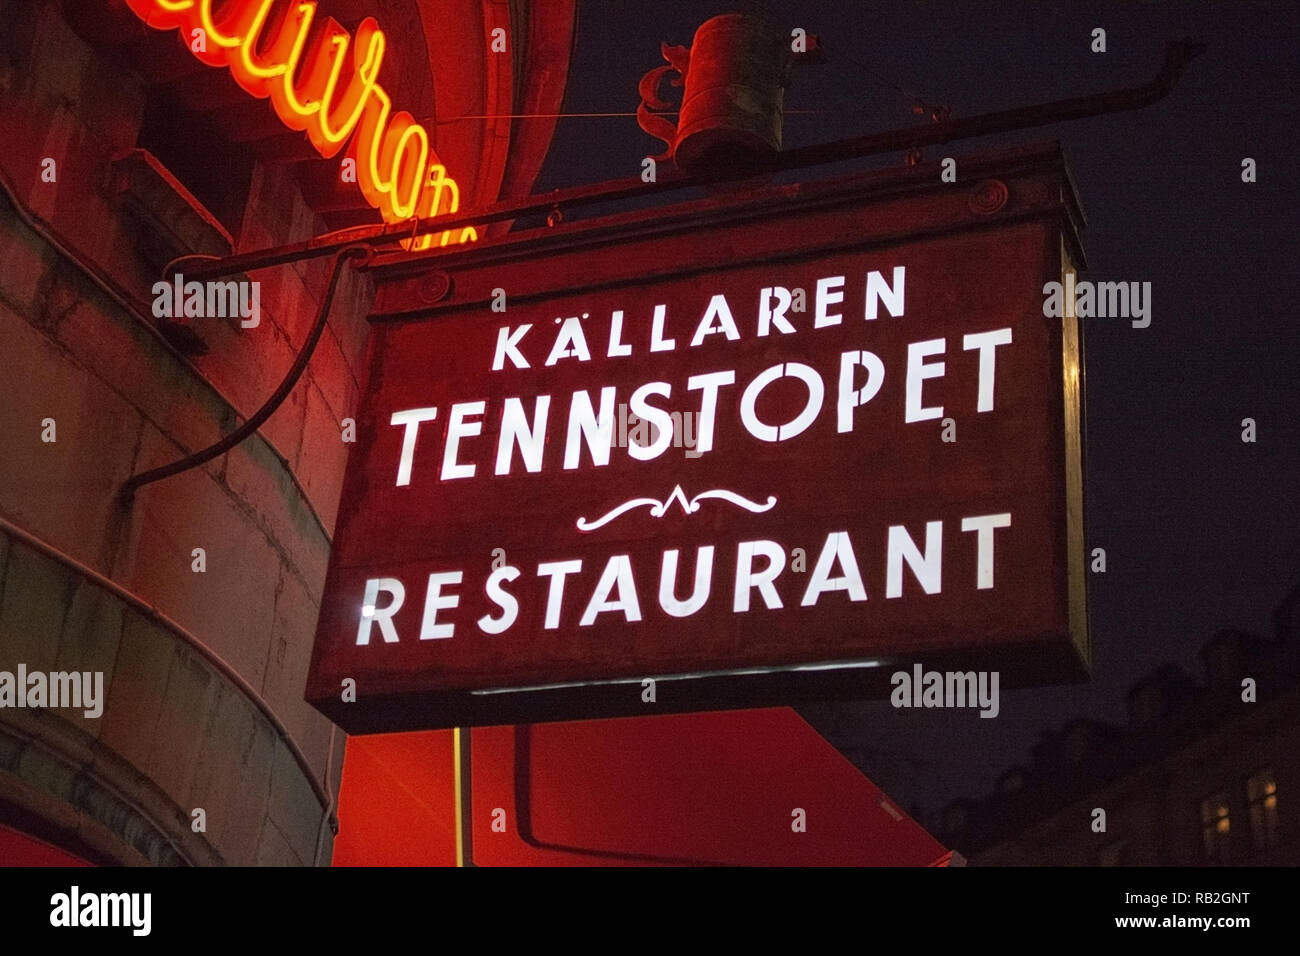 STOCKHOLM, Schweden, 29. Dezember 2018: Tennstopet Restaurant Eingang vorne außen Leuchtreklame bei Nacht am 29. Dezember 2019 in Stockholm, Schweden Stockfoto